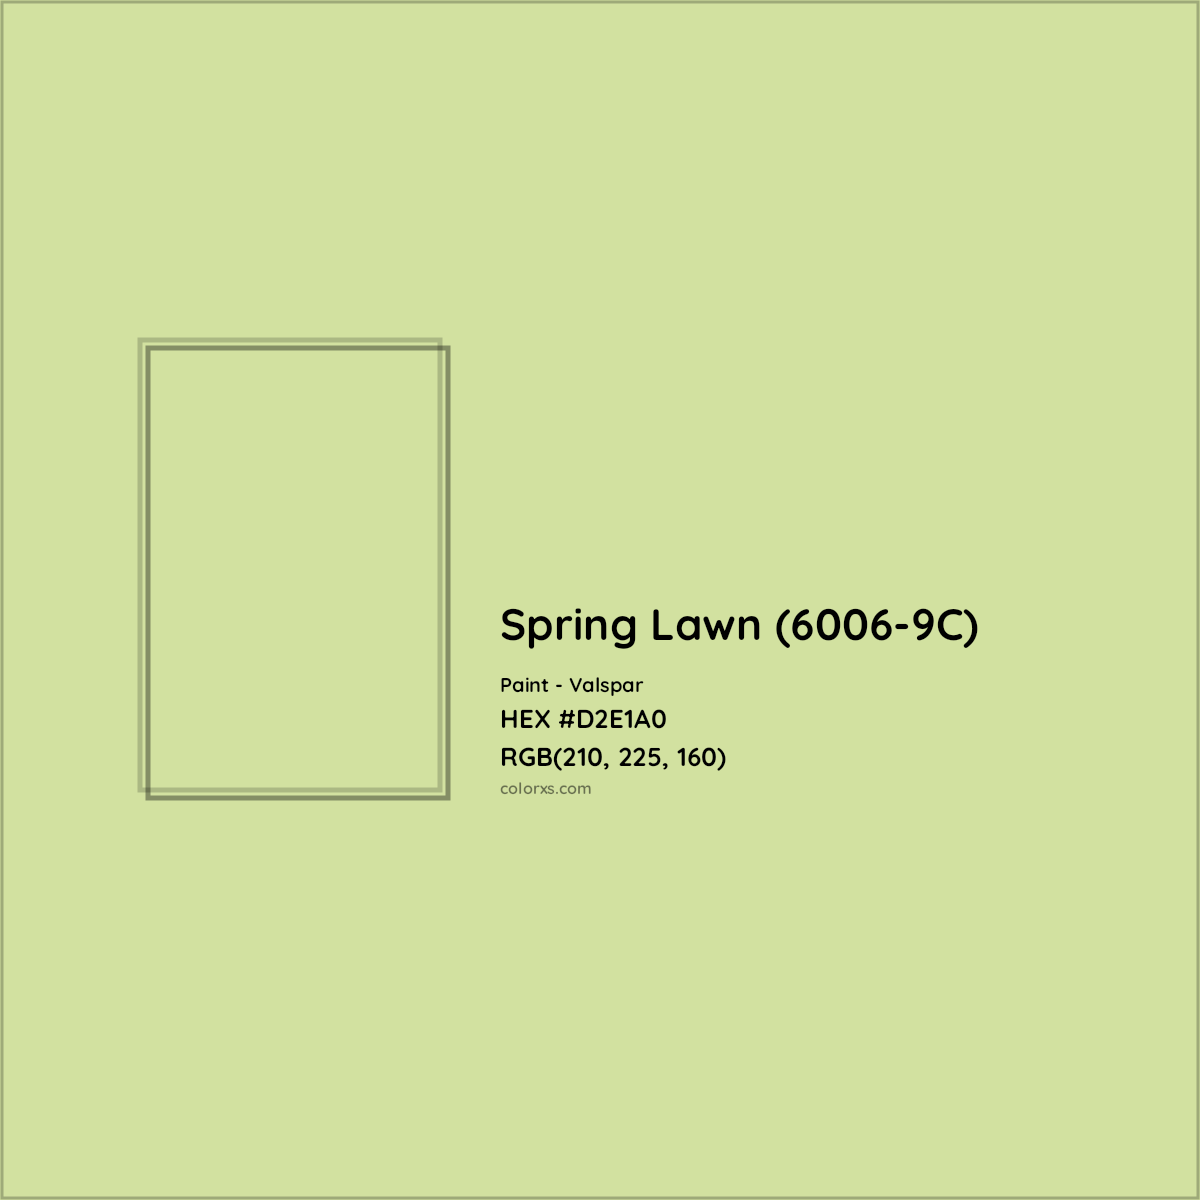 HEX #D2E1A0 Spring Lawn (6006-9C) Paint Valspar - Color Code